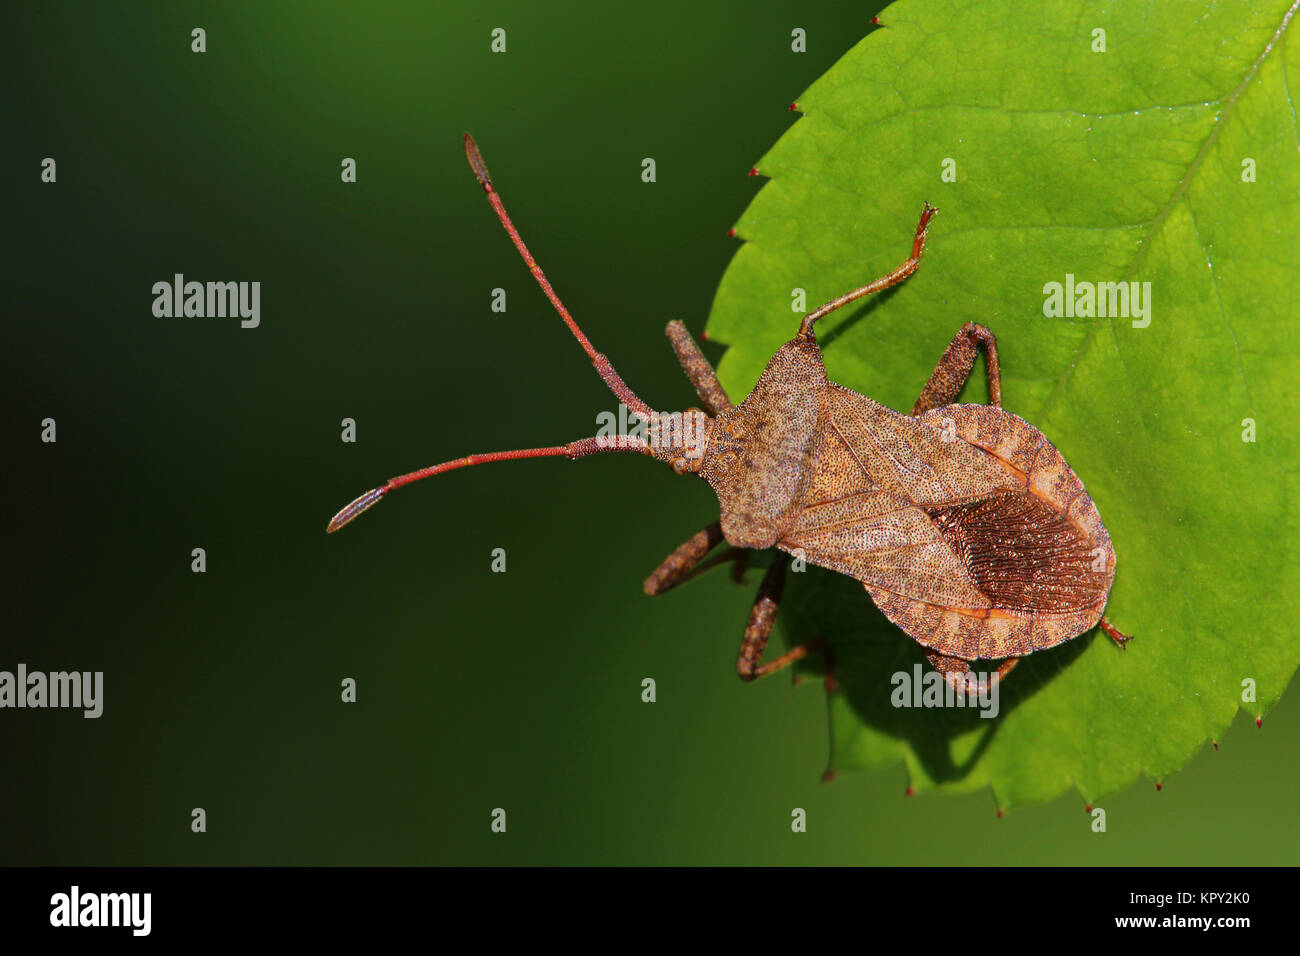 leather bug coreus marginatus Stock Photo